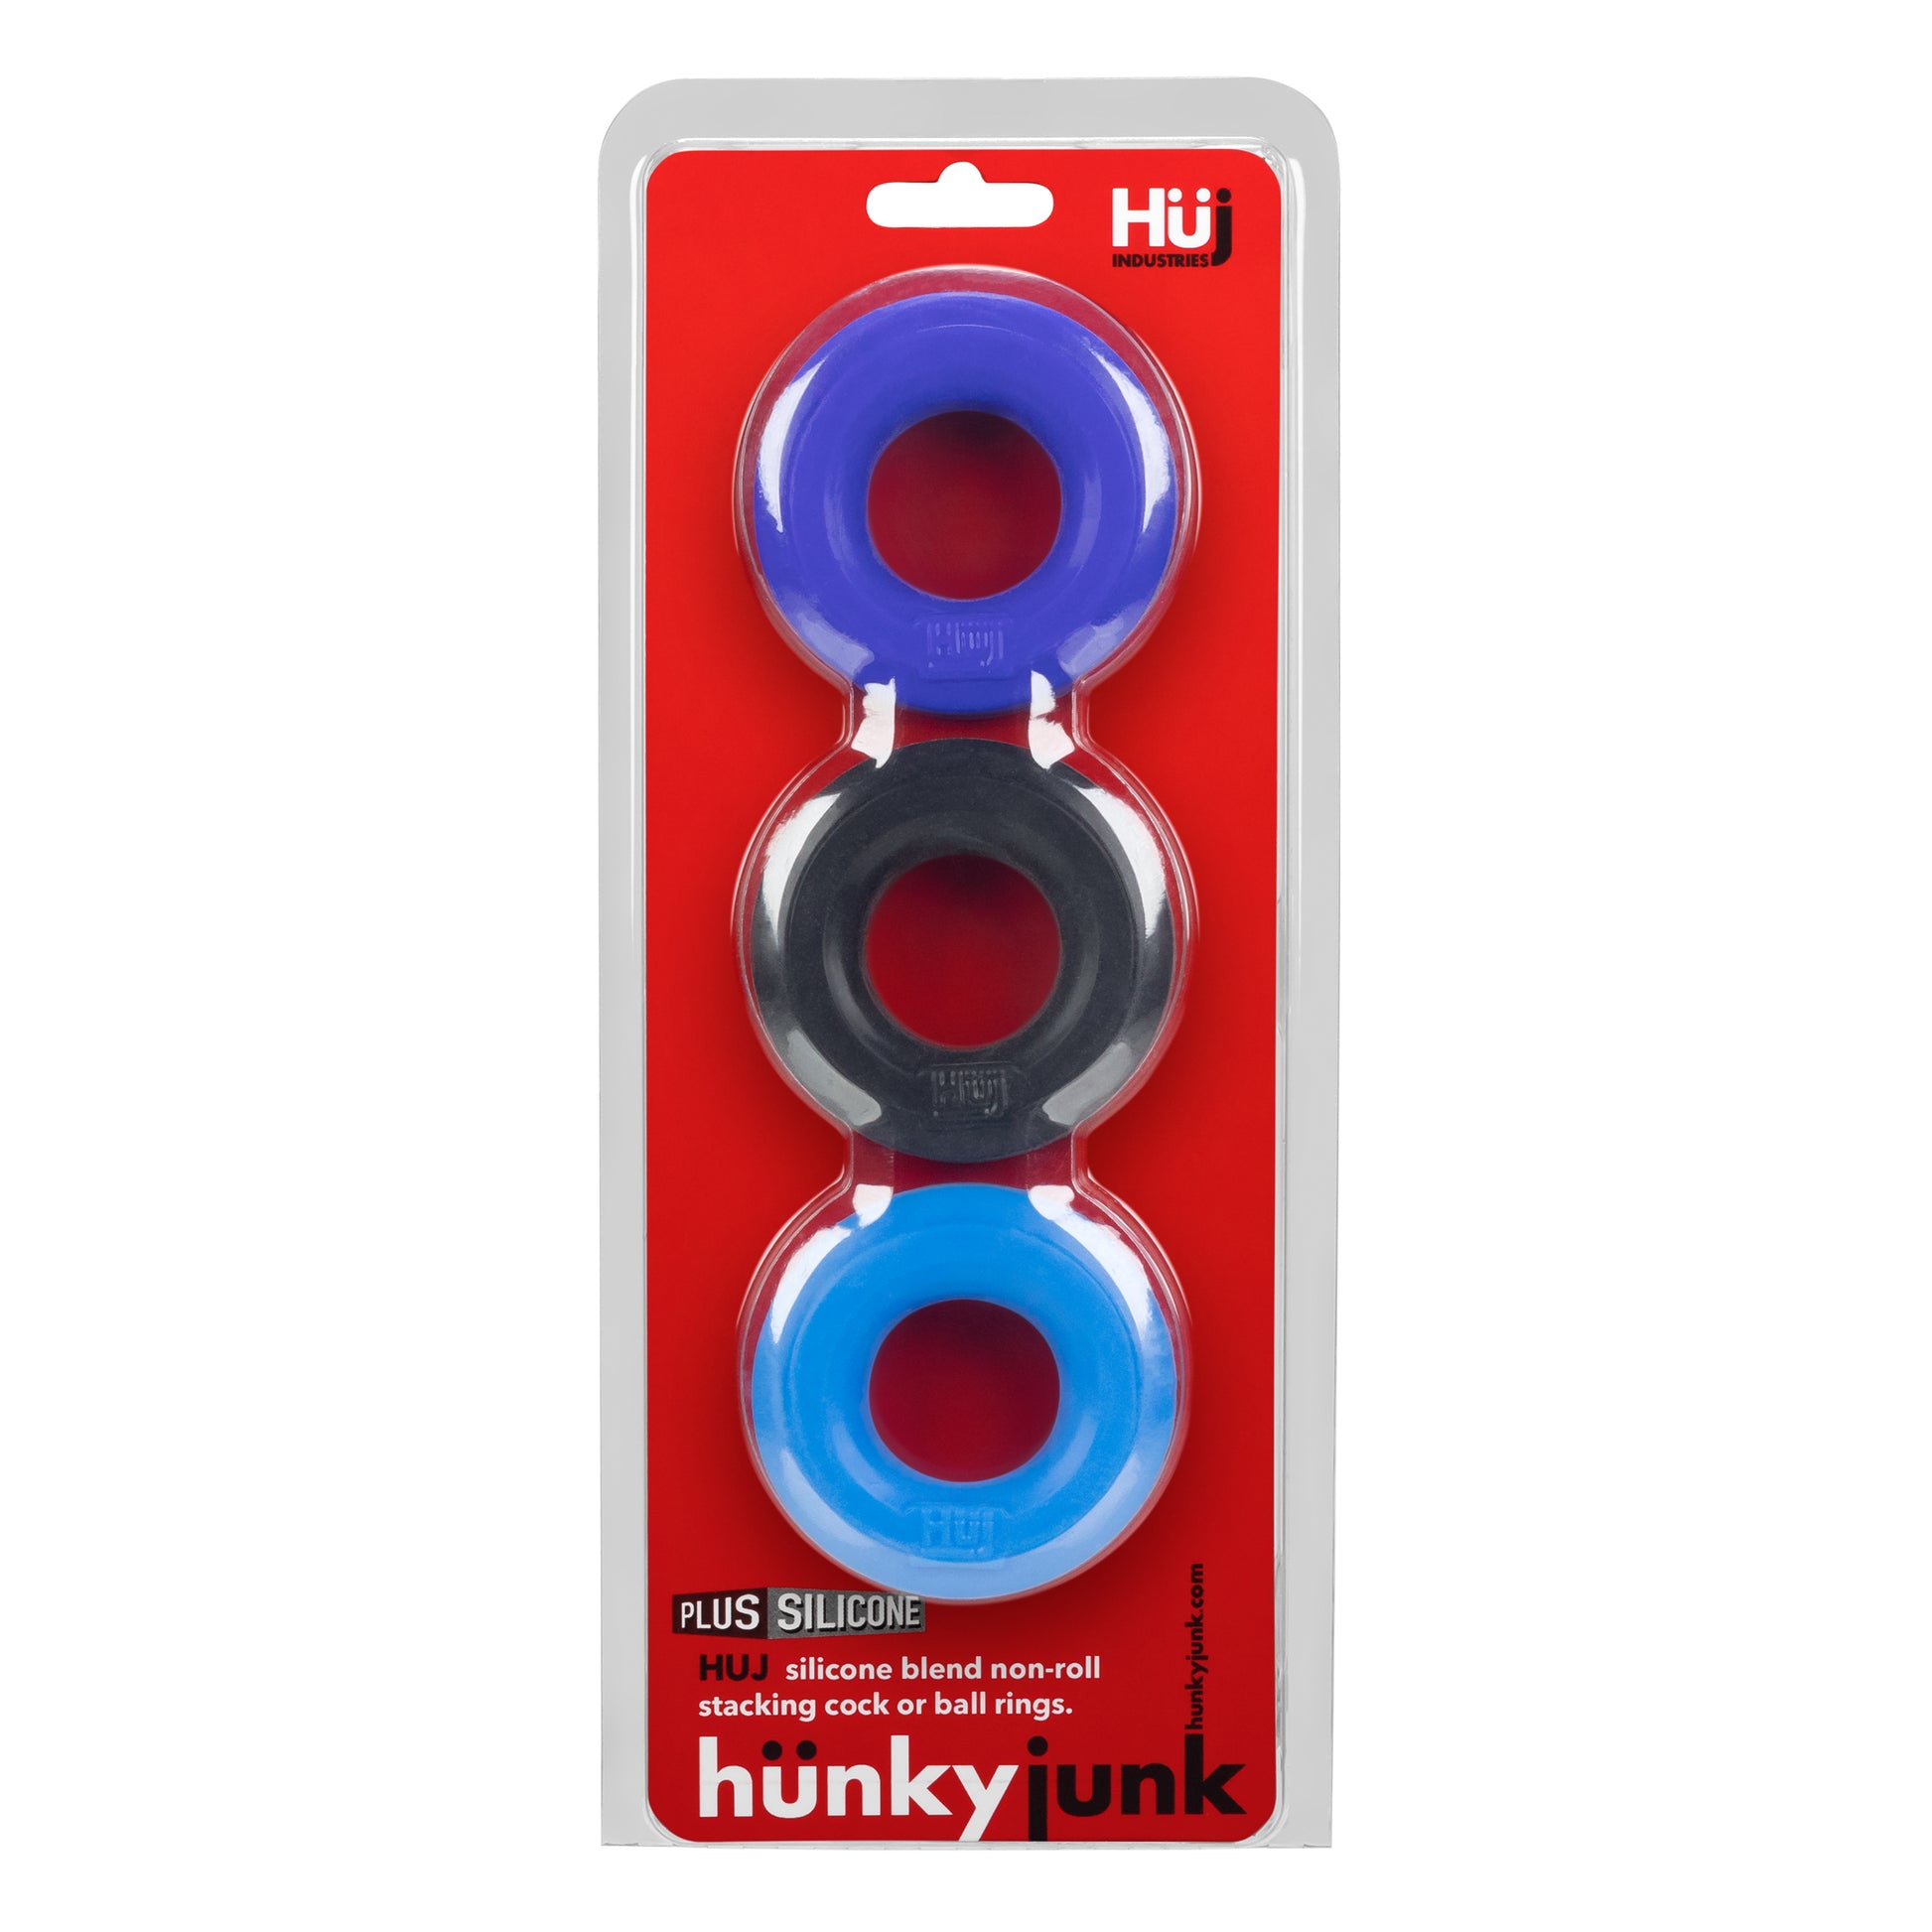 HUJ c-ring 3 Pack (5578523377828)